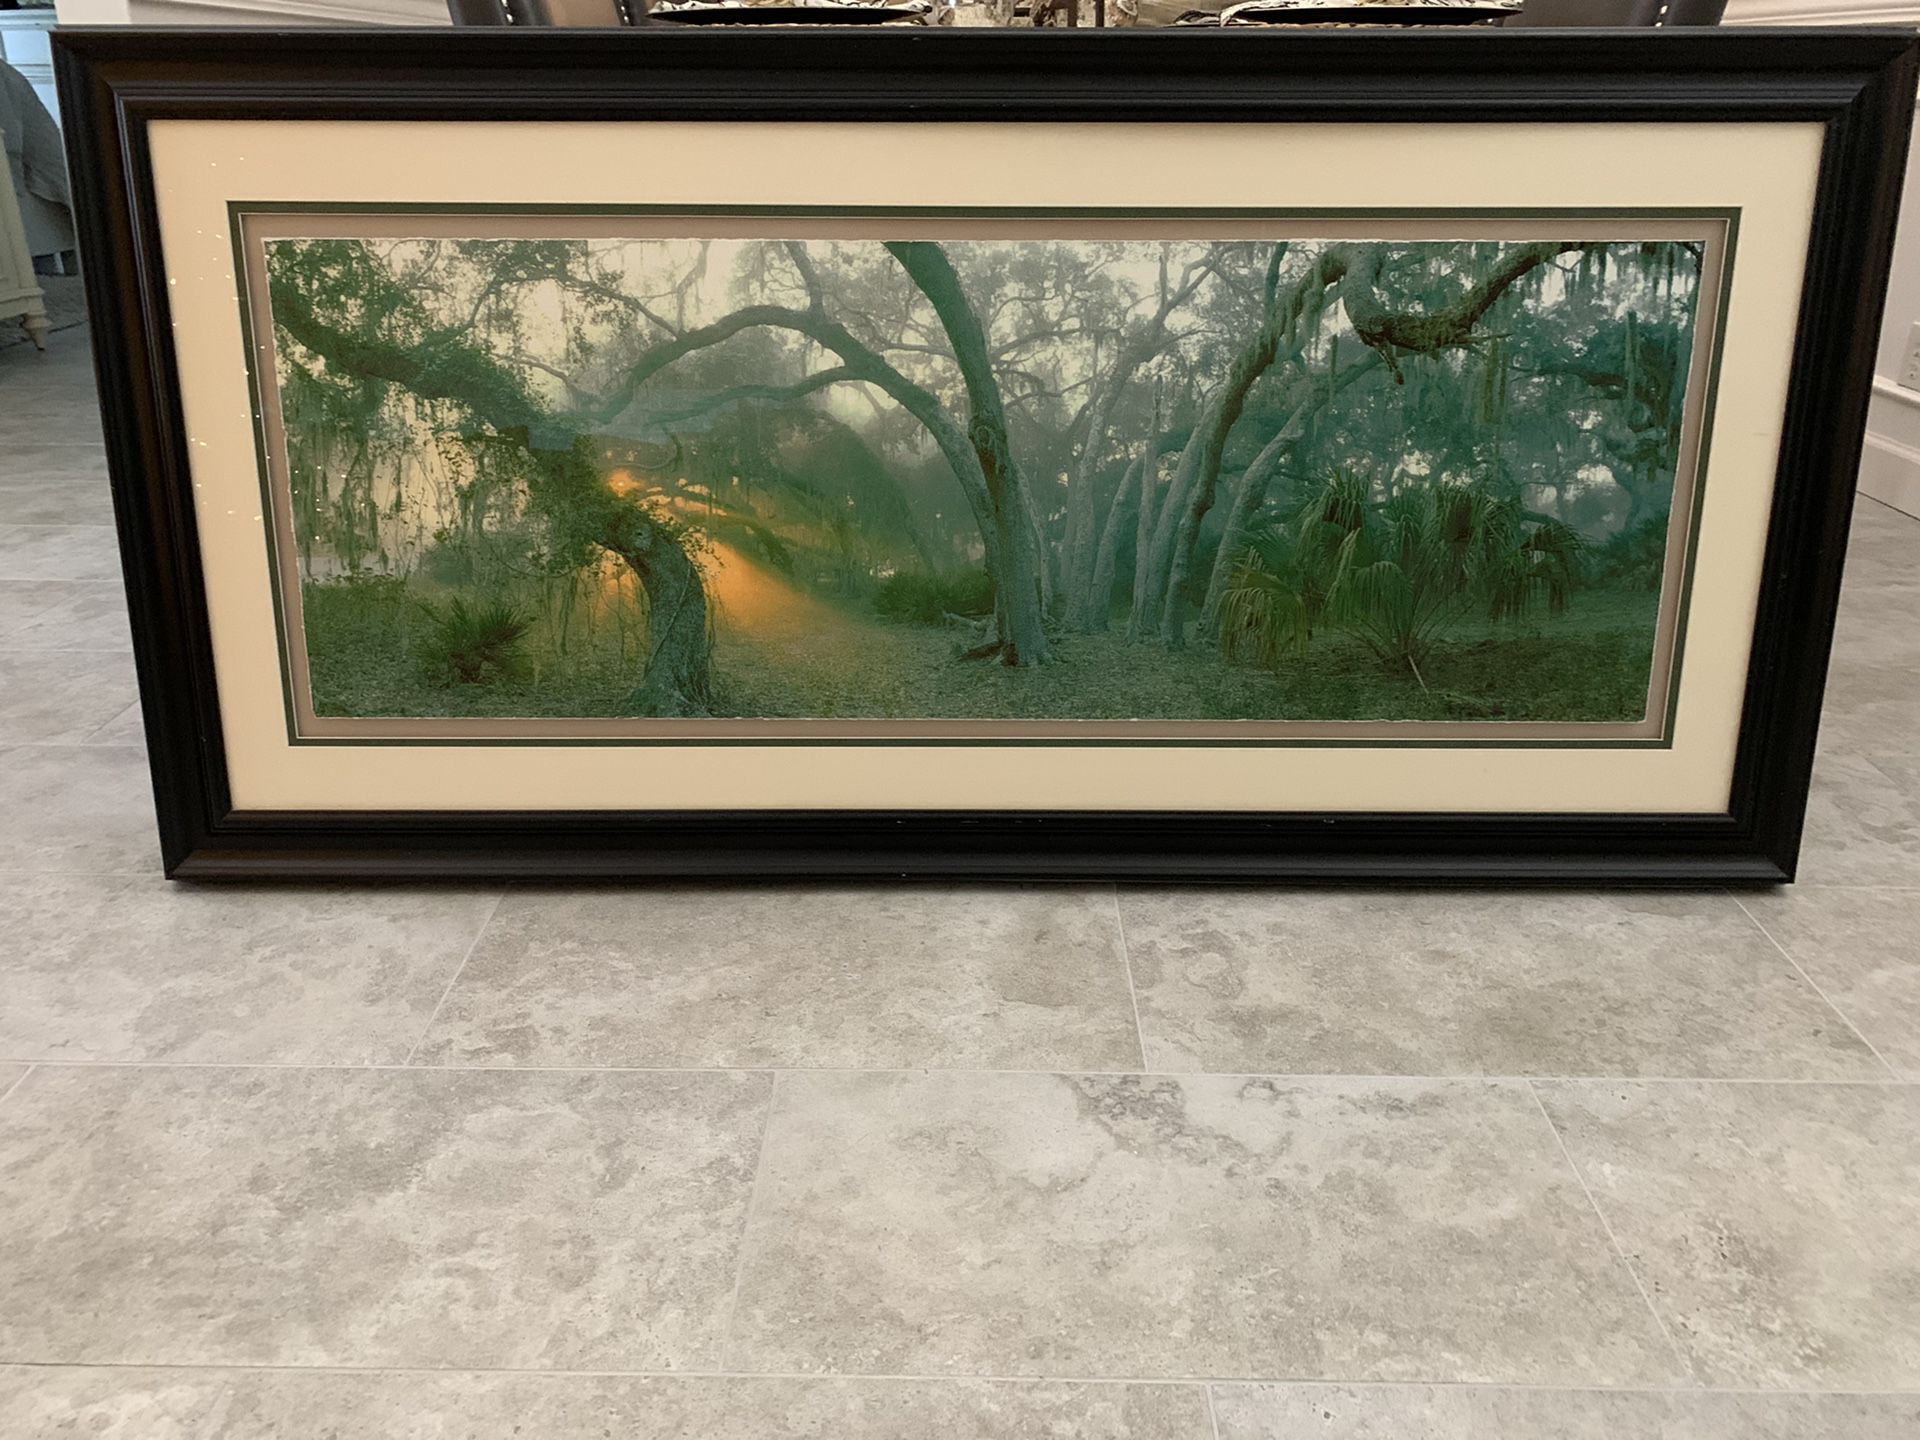 Gorgeous Florida tree & sunrise framed photo